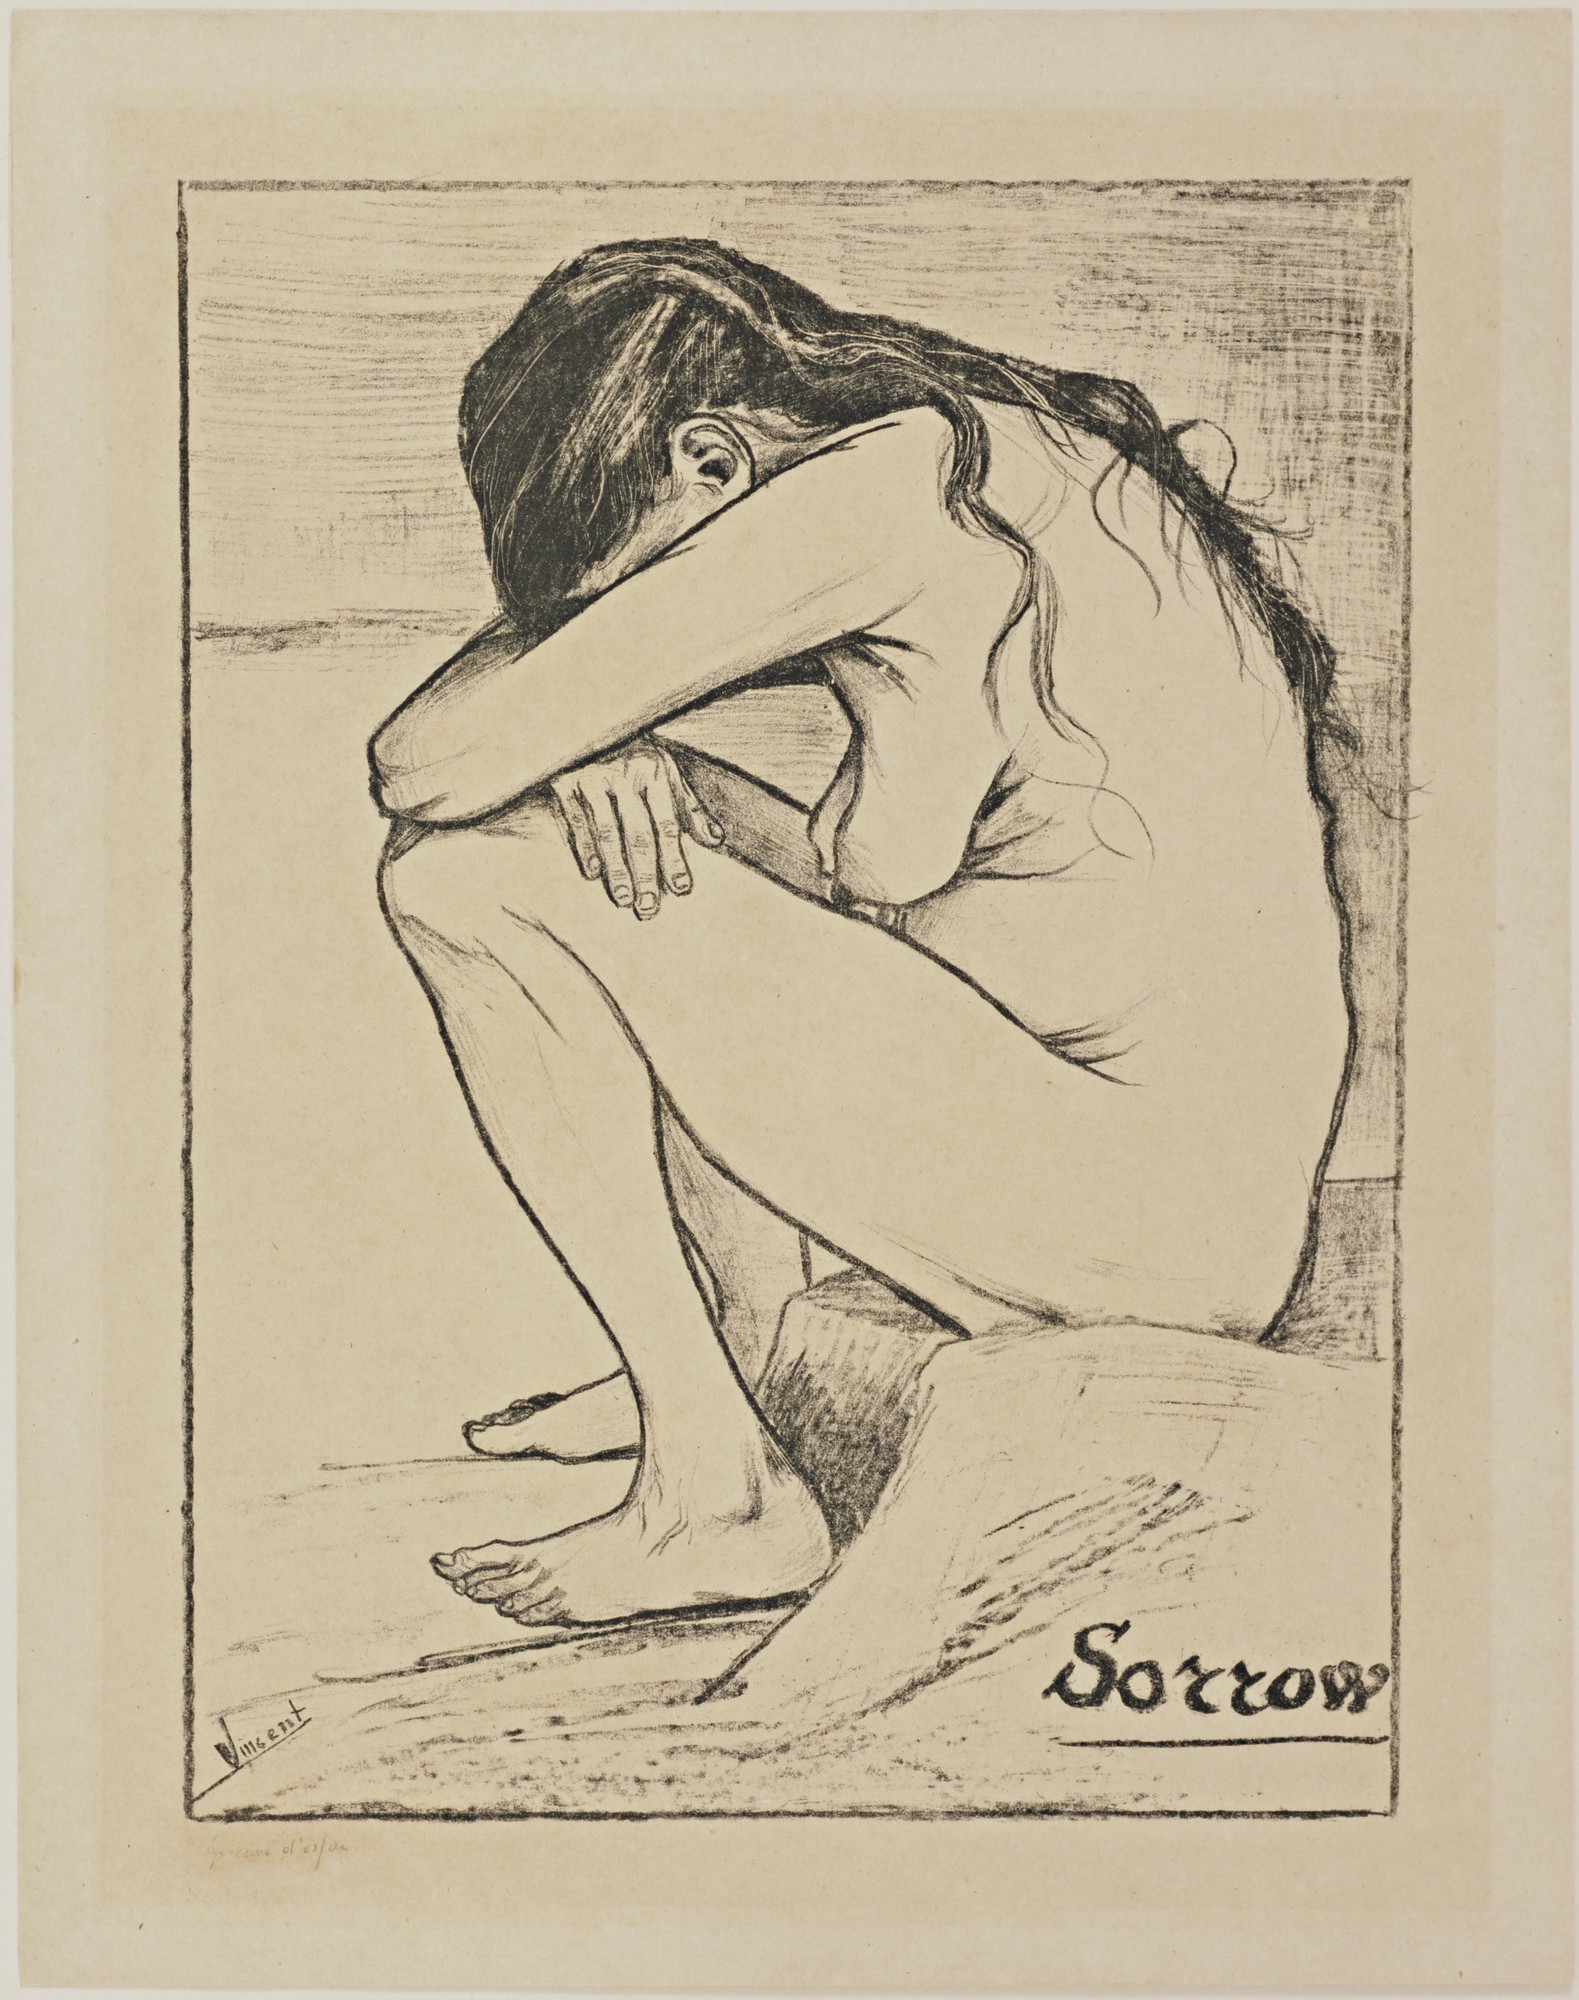 После Сиена есть несколько десятков рисунков, в том числе самый интересный - «Печаль» (грусть), на которой голая женщина сидит на пороге дома, вытянув руки